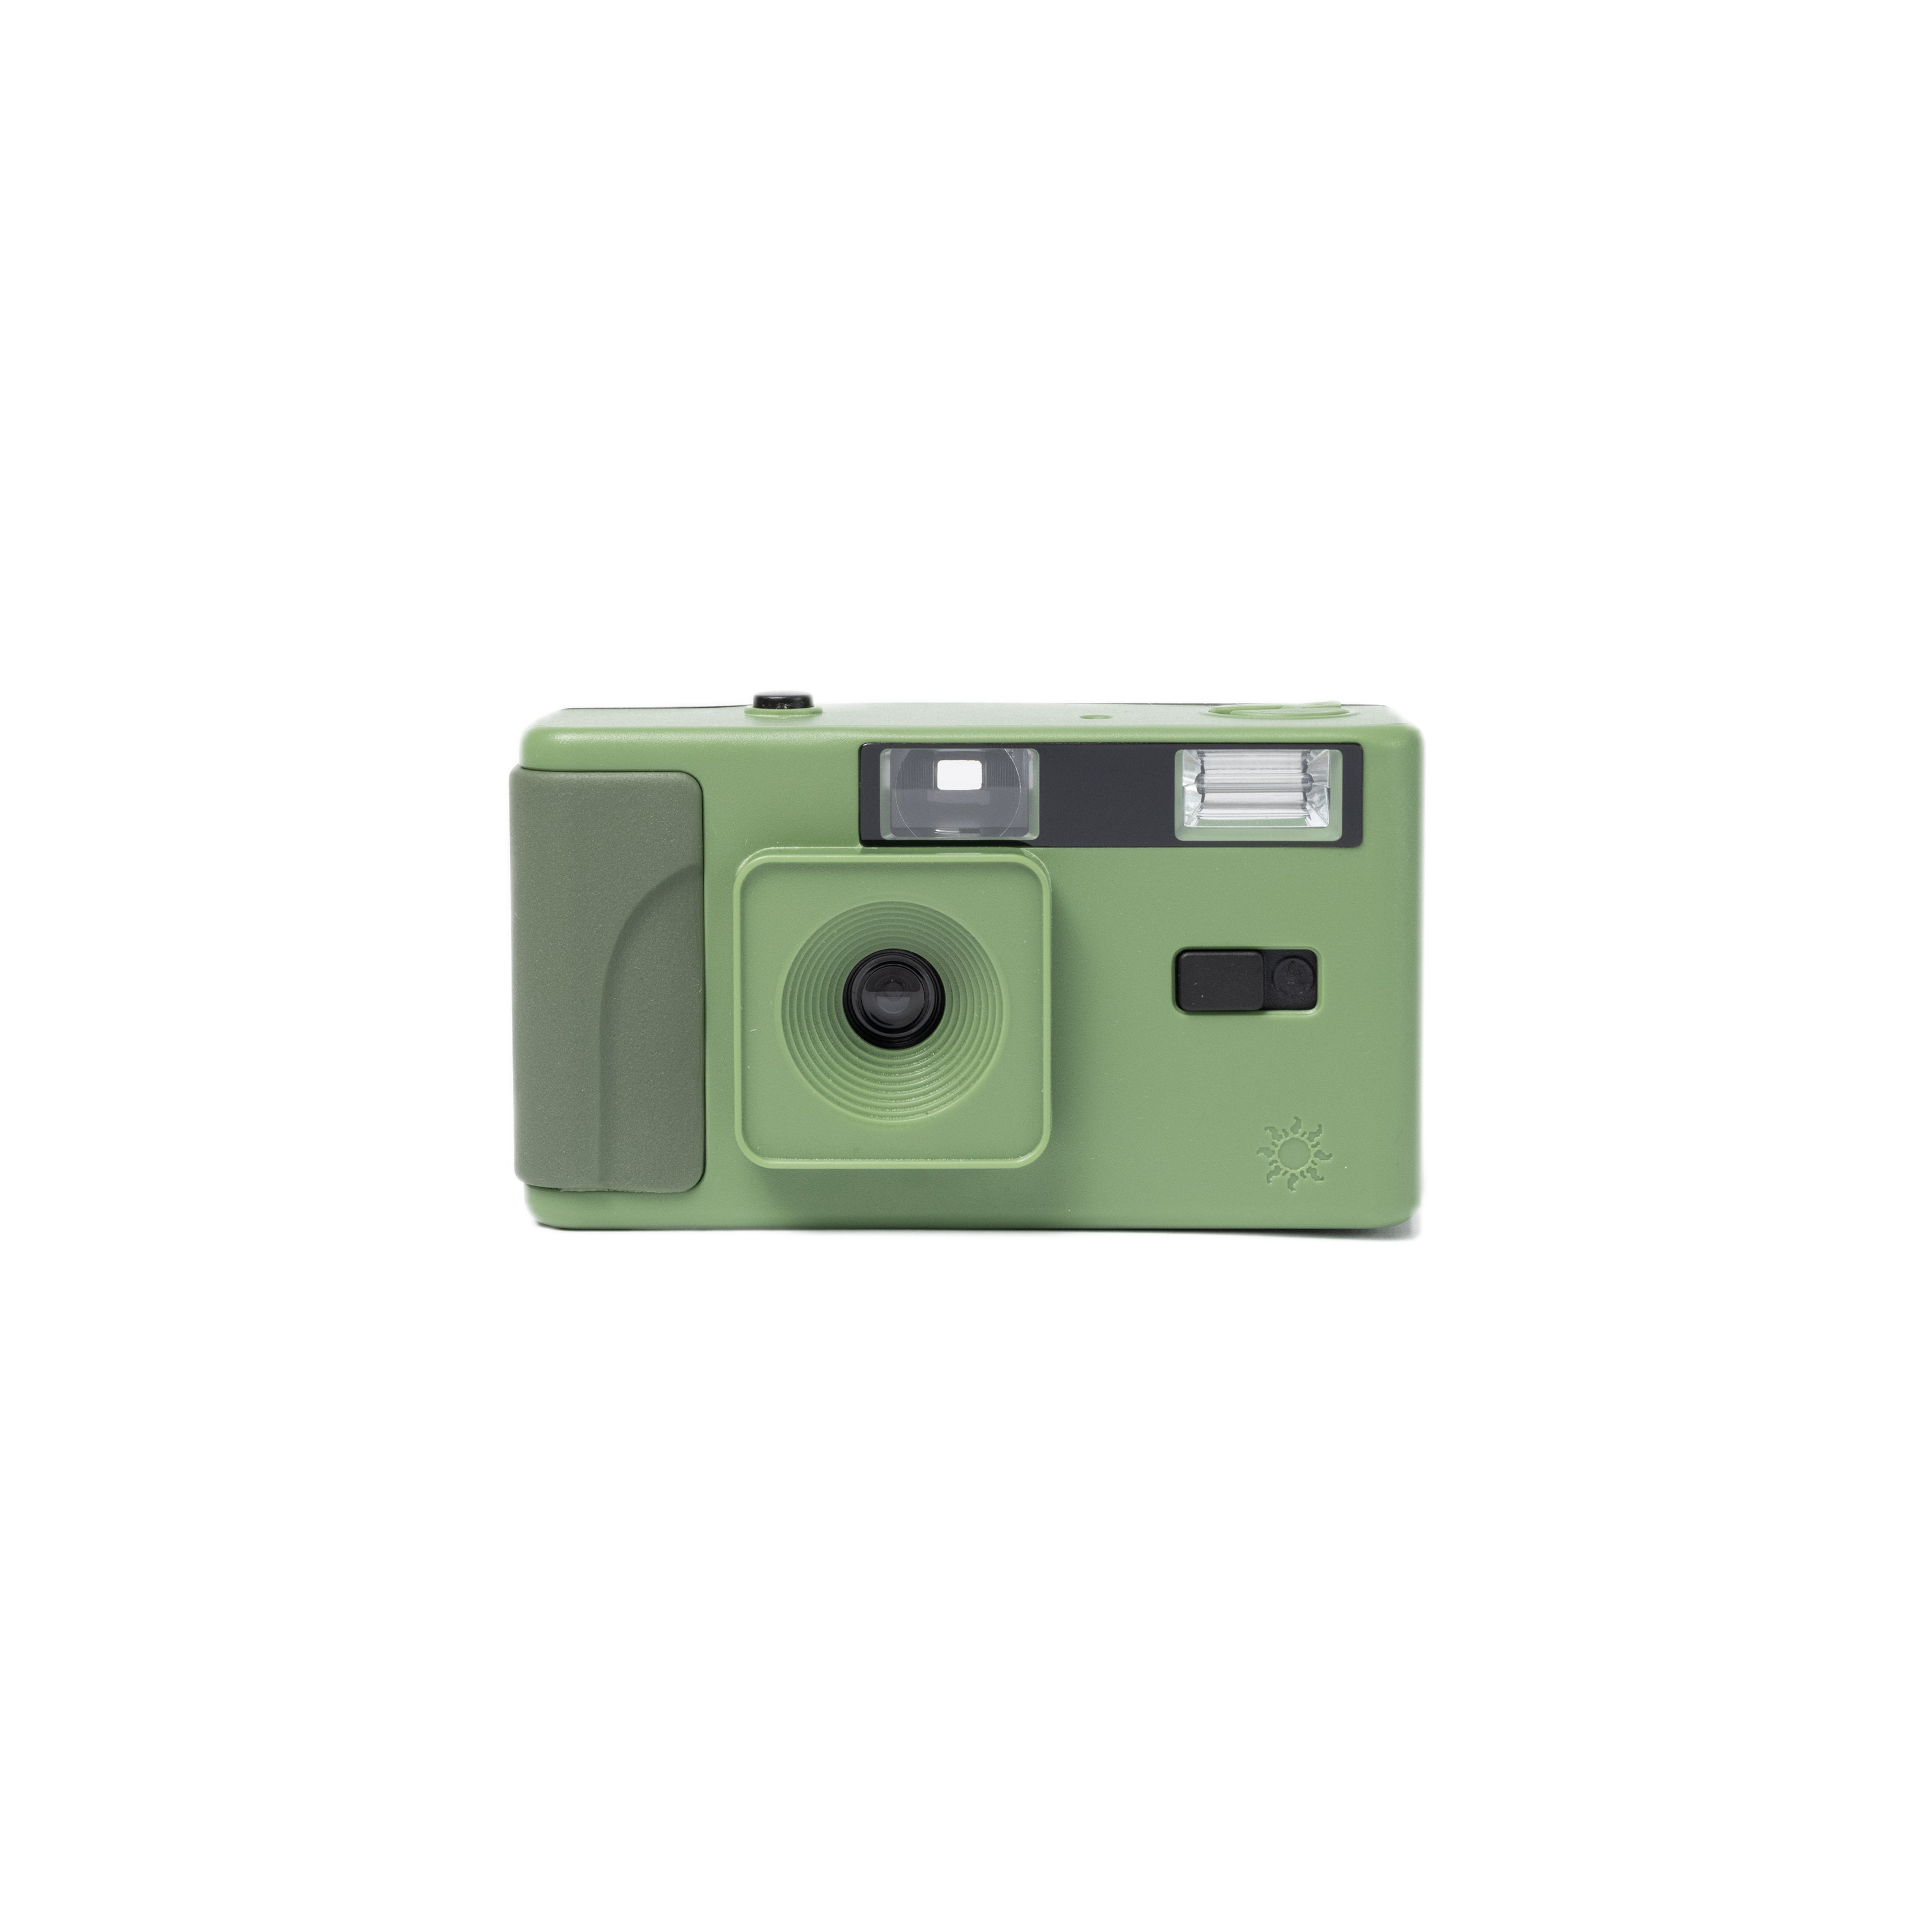 35mm Film Camera